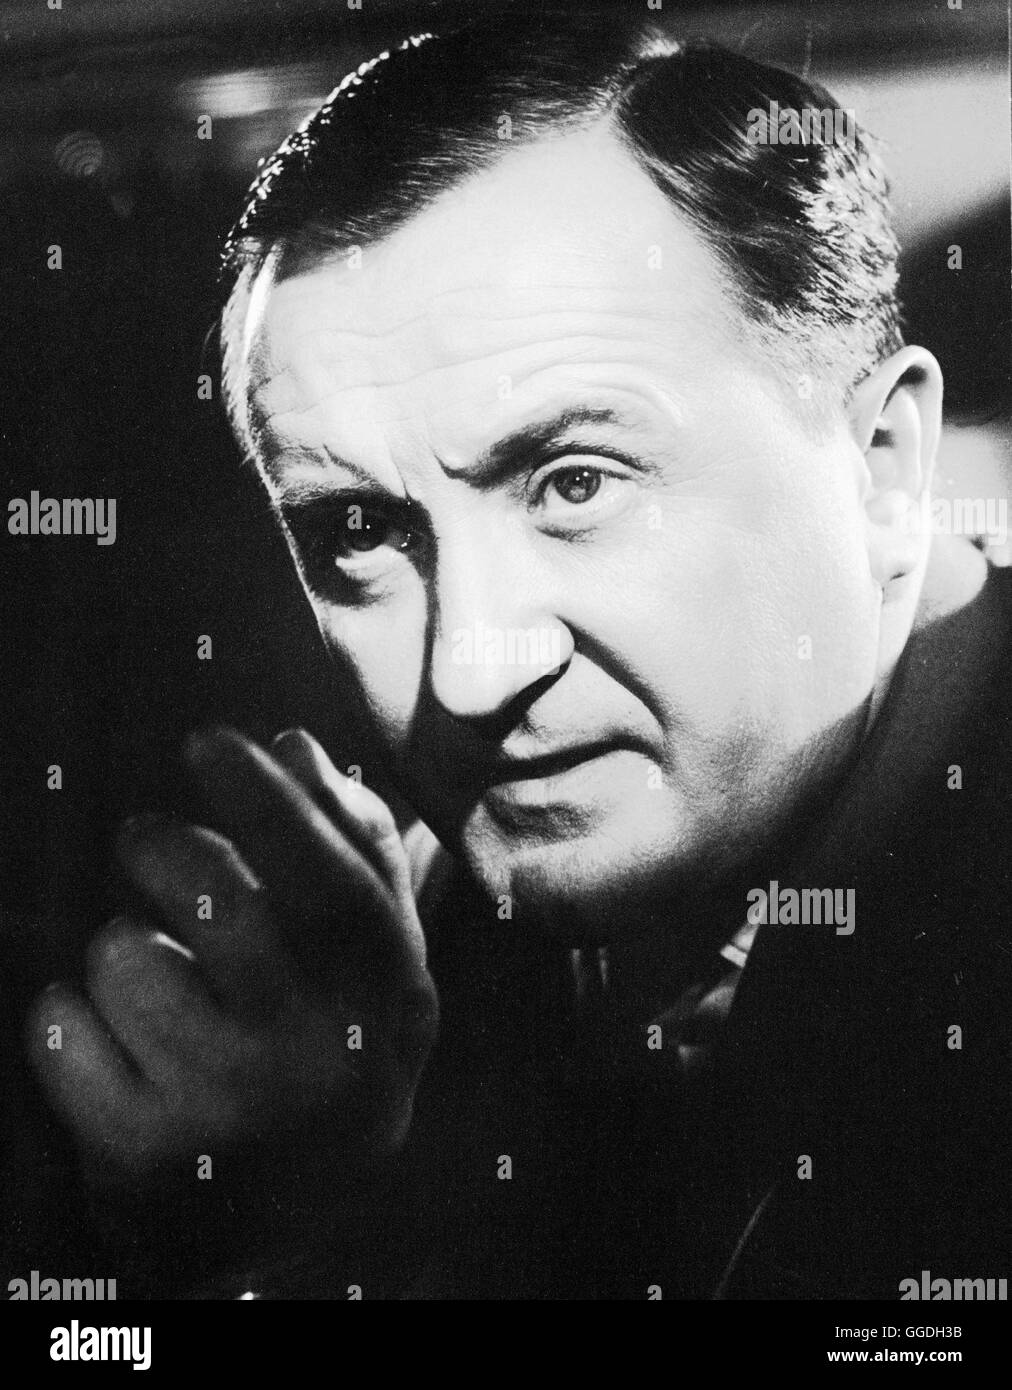 GESTEHEN SIE, DR. CORDA Deutschland 1958 / Josef von Baky SIEGFRIED LOWITZ als Inspektor Guggitz, Aufnahme aus 'Gesehen Sie, Dr. Corda!', 1958 Regie: Josef von Baky Stock Photo